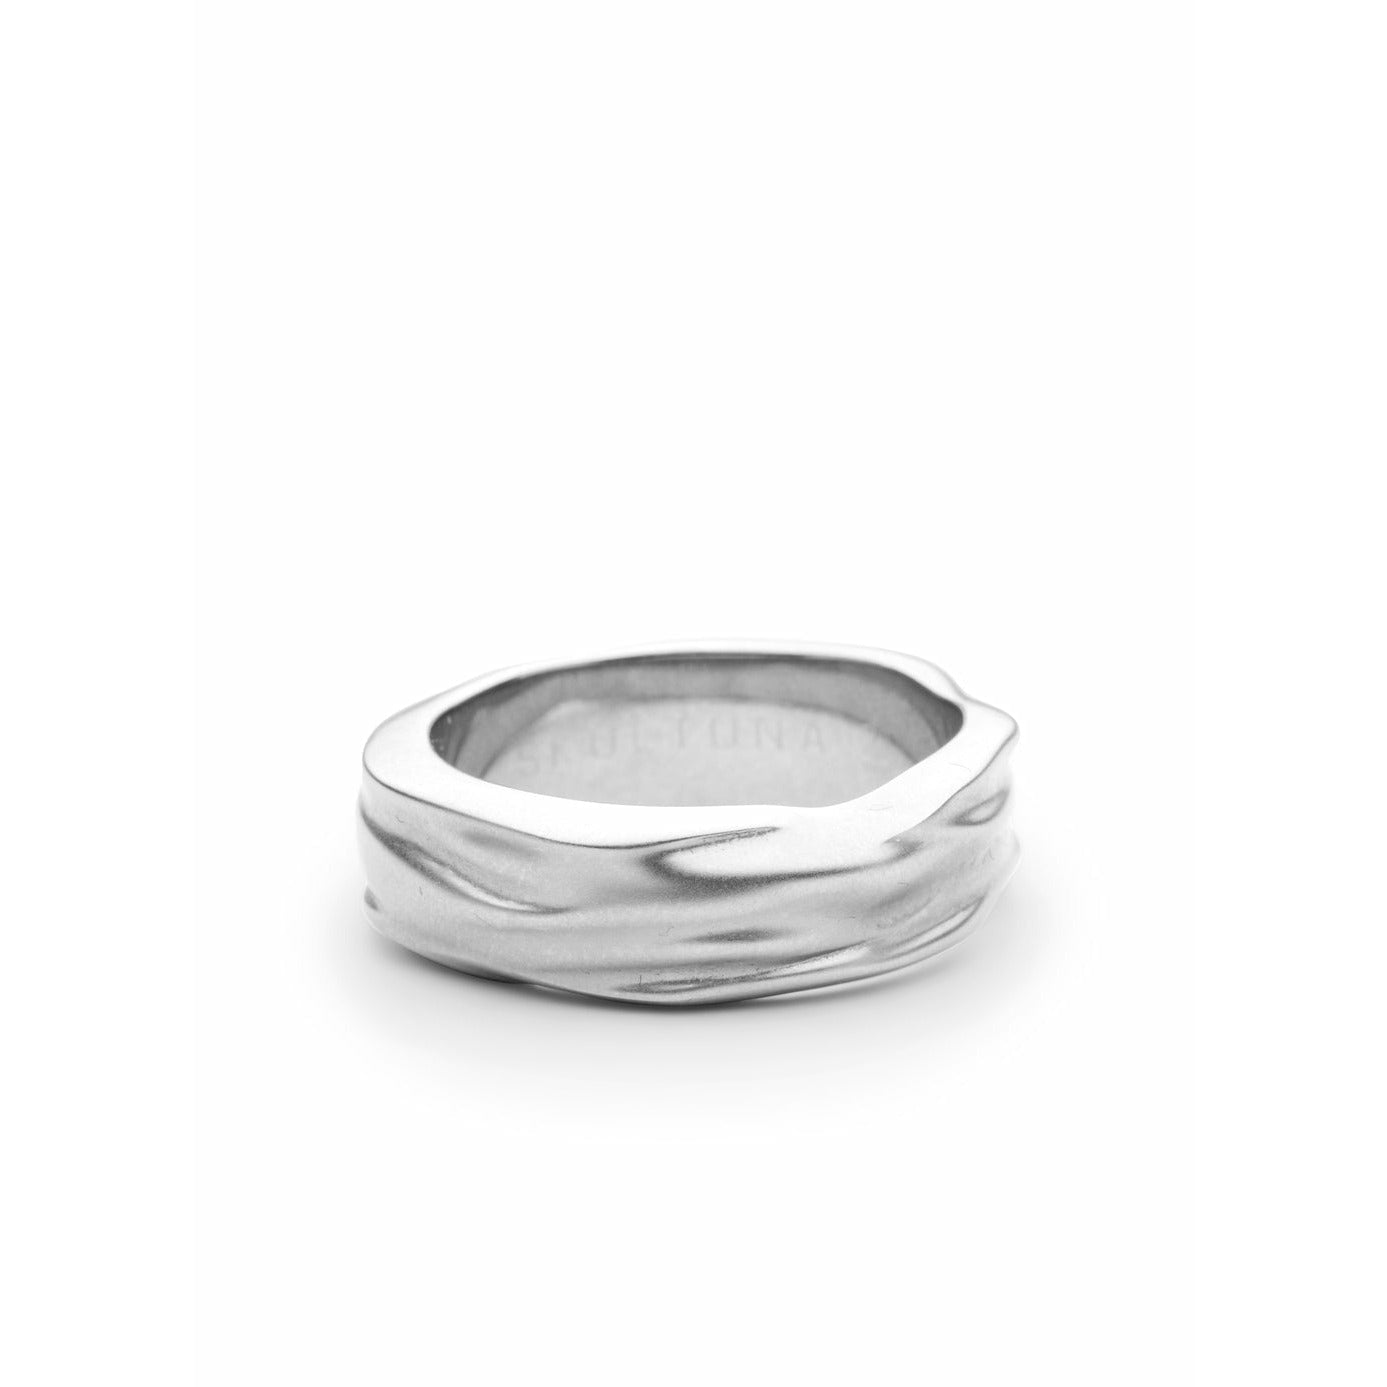 Skultuna objets opaques anneau épais petit acier Matt, Ø1,6 cm